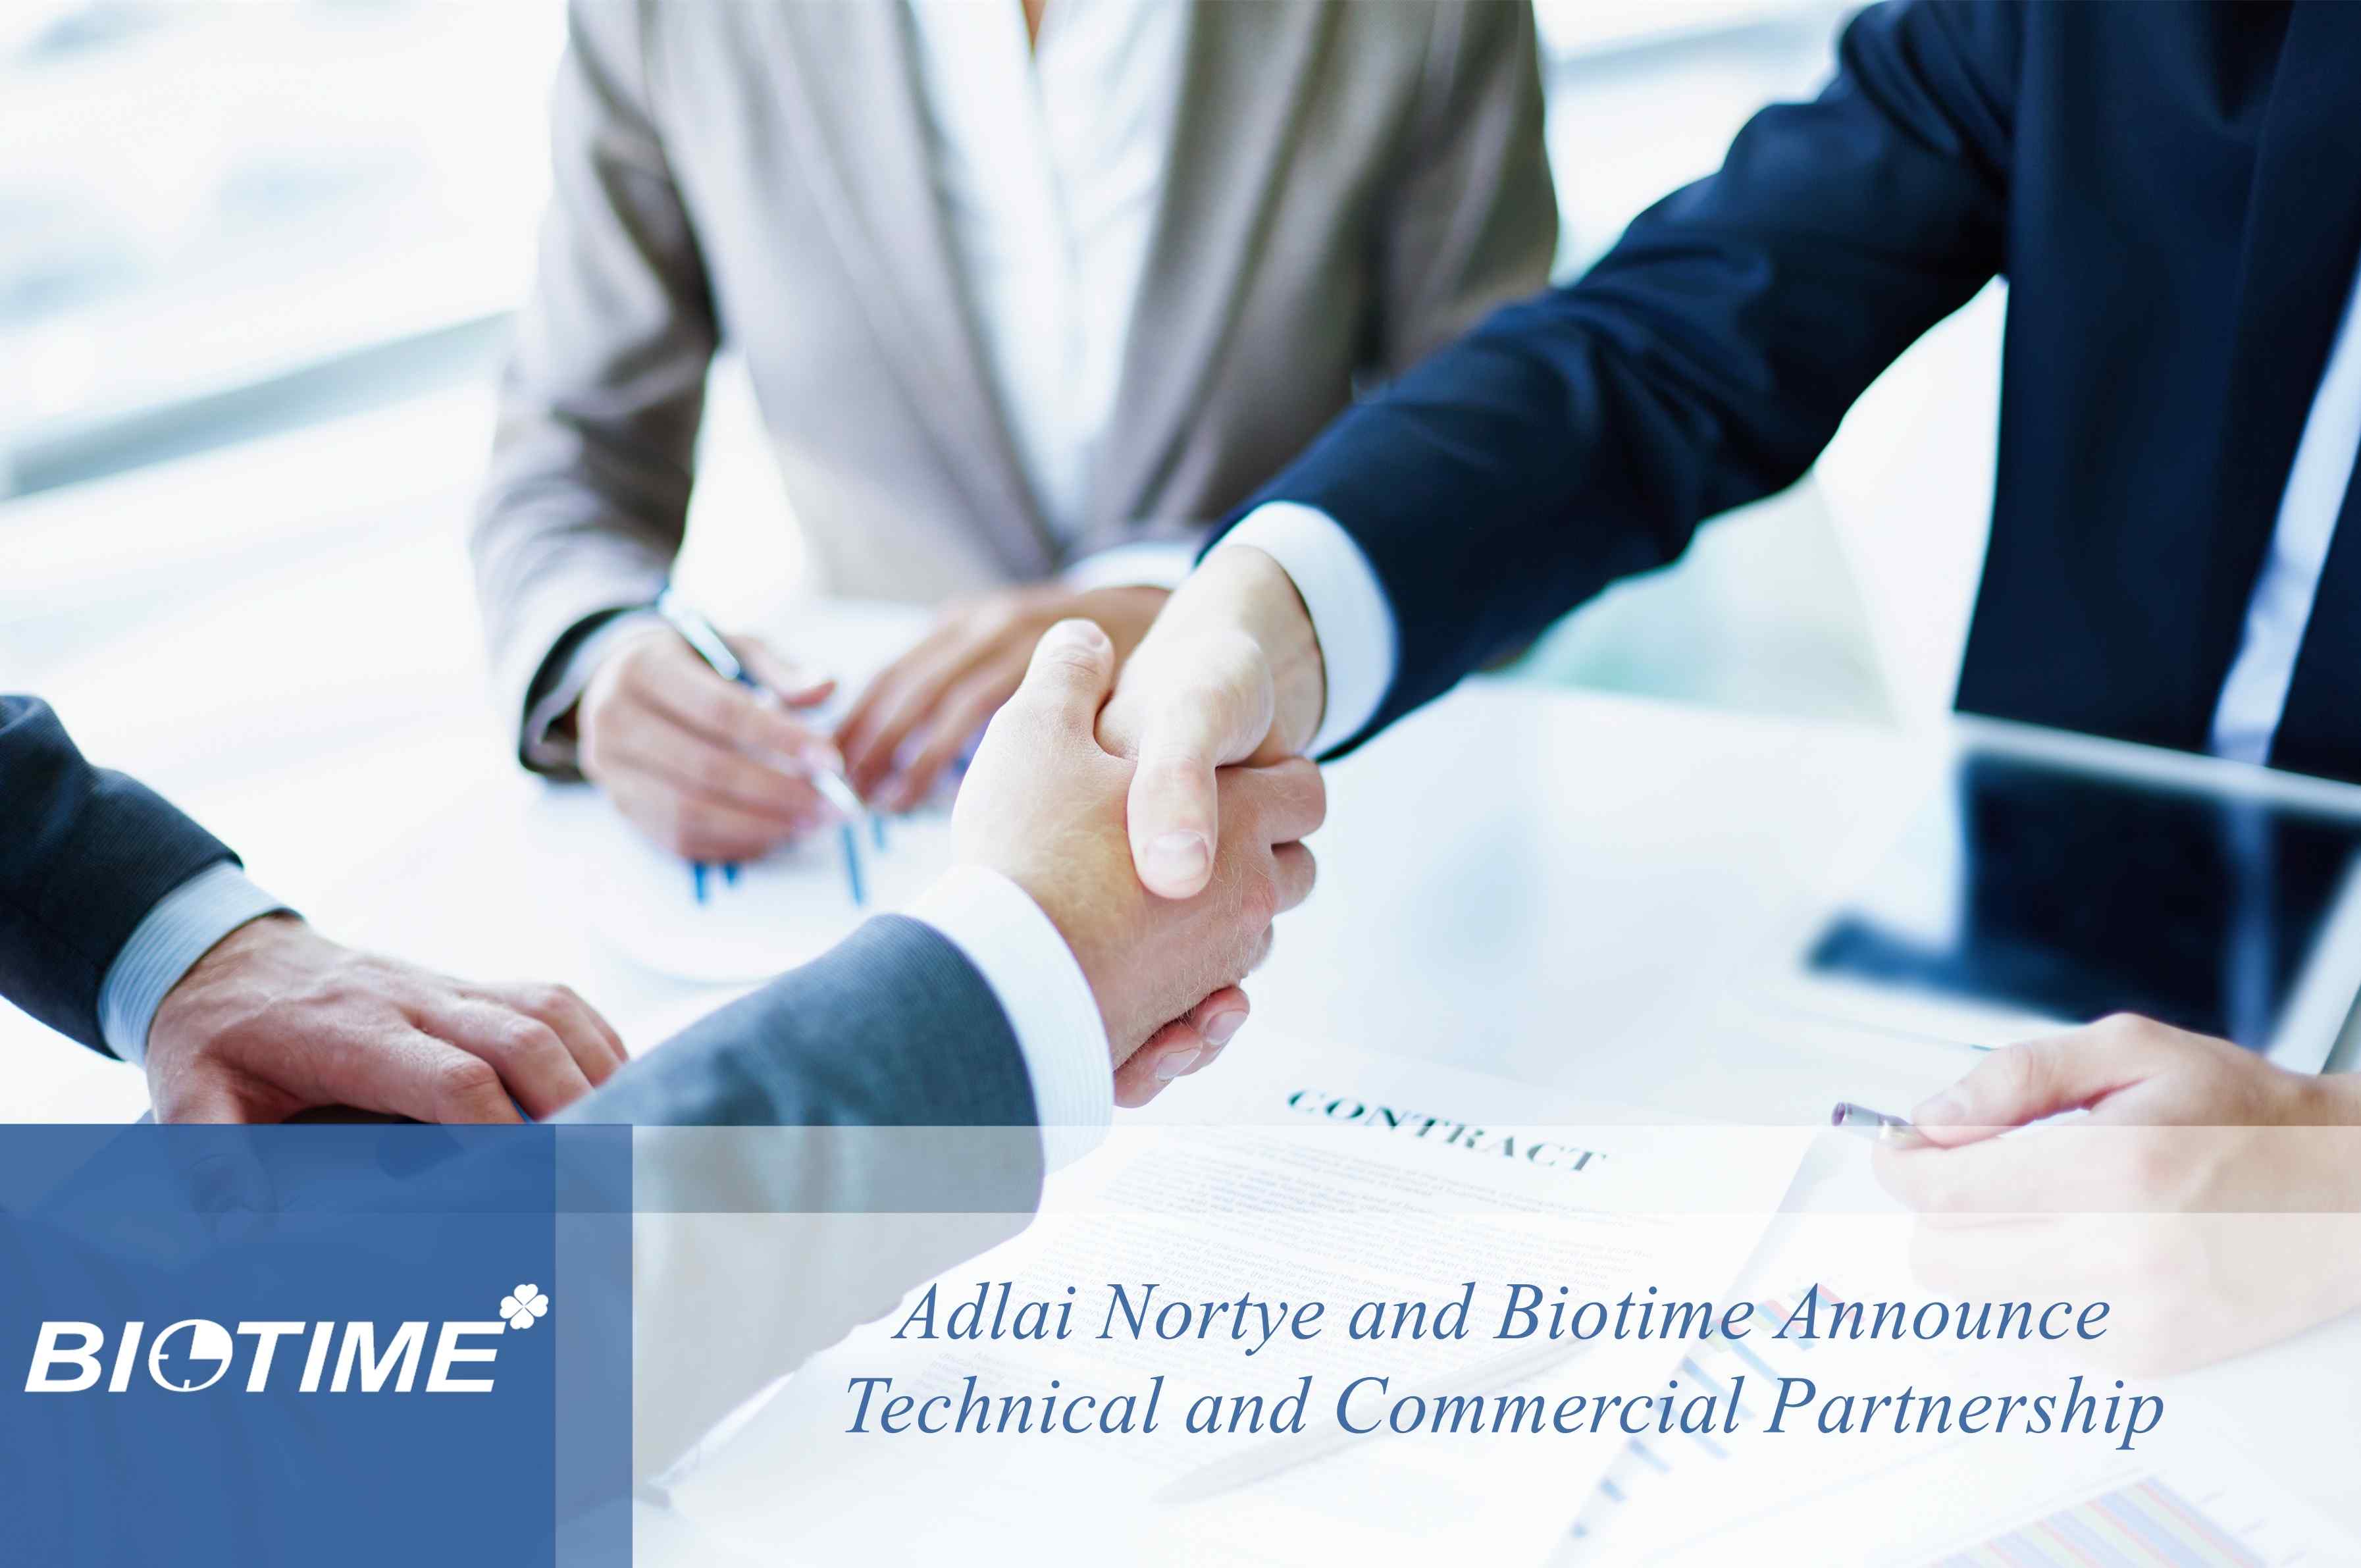 Adlai Nortye и Biotime объявляют о техническом и коммерческом партнерстве